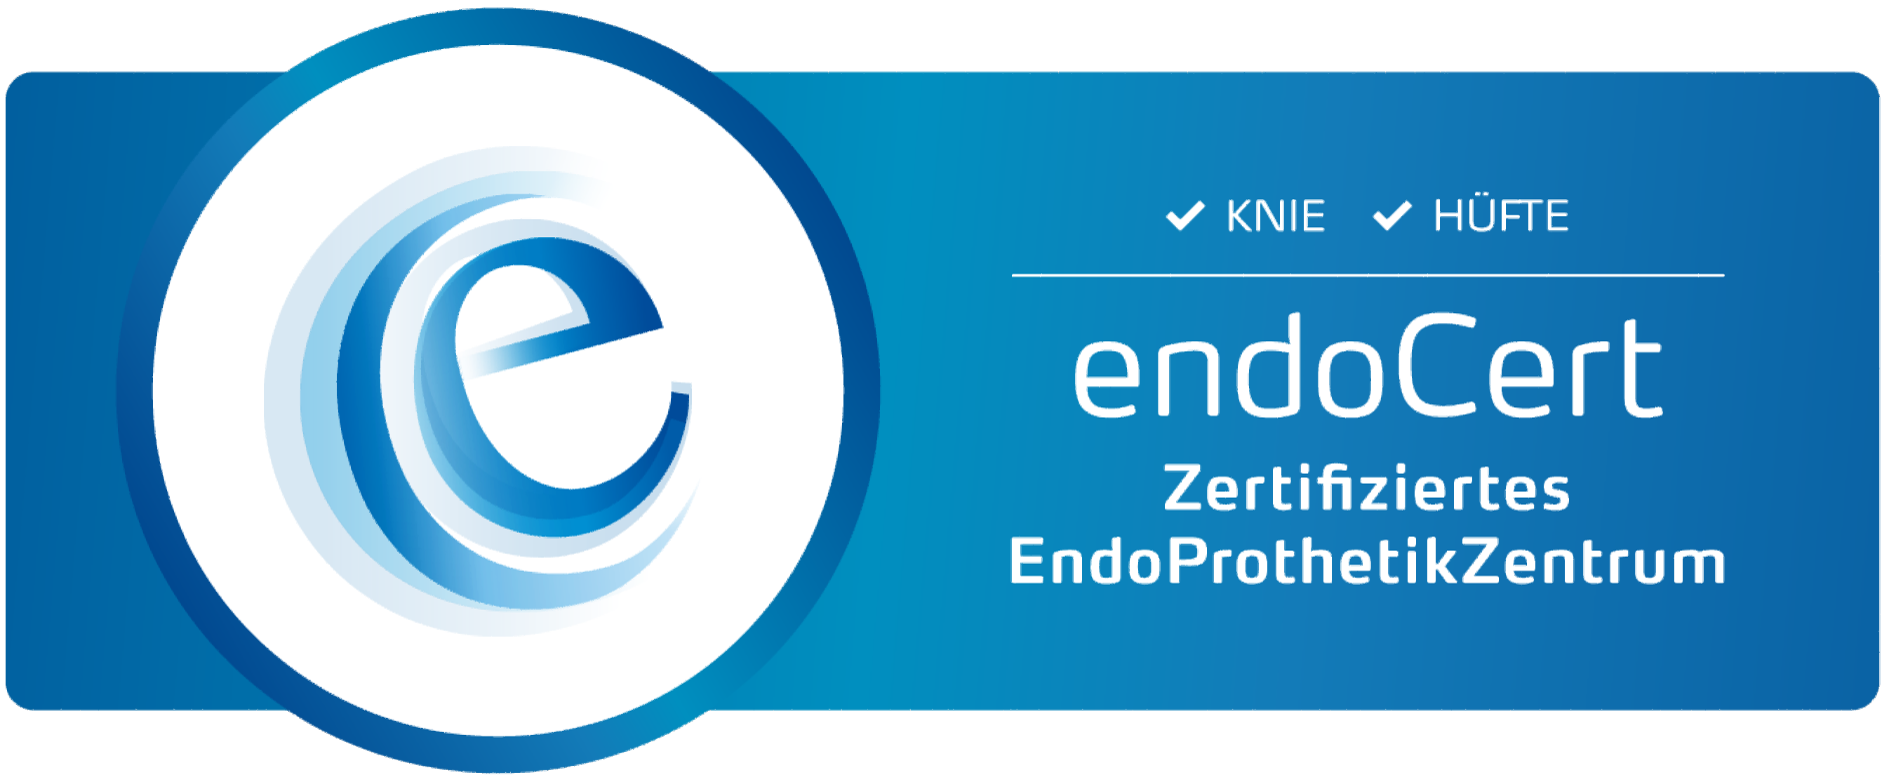 Zertifiziertes Endoprothetikzentrum